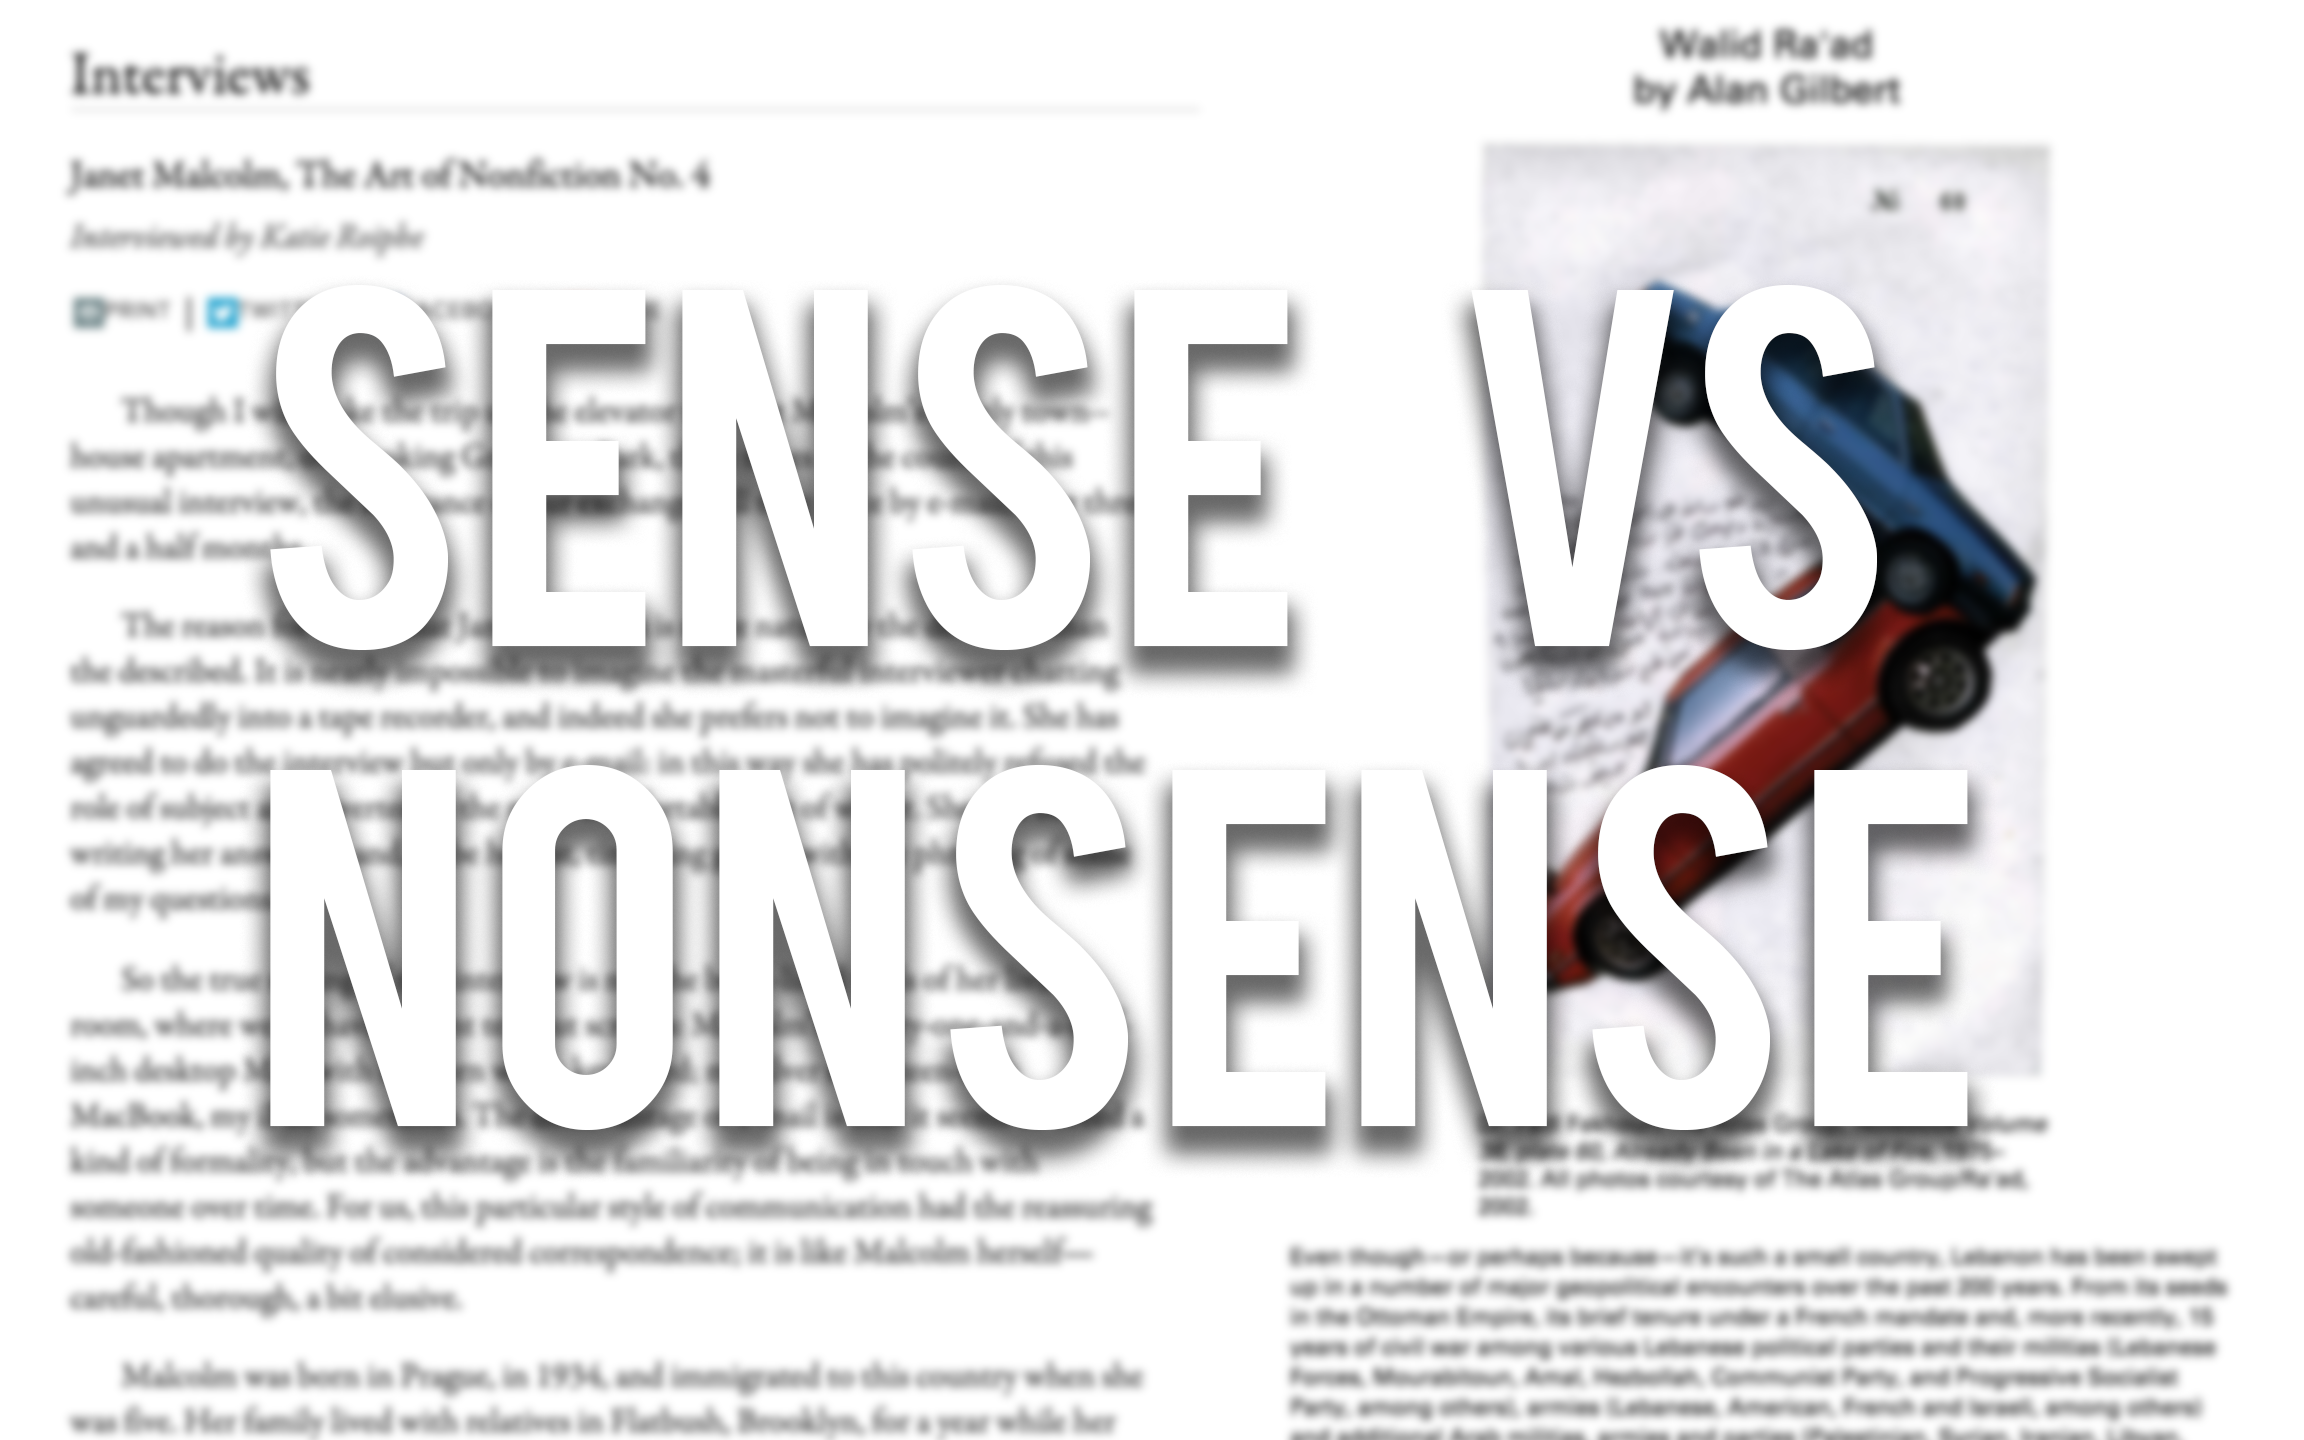 Sense/Nonsense: Janet Malcolm and Walid Ra’ad interviews